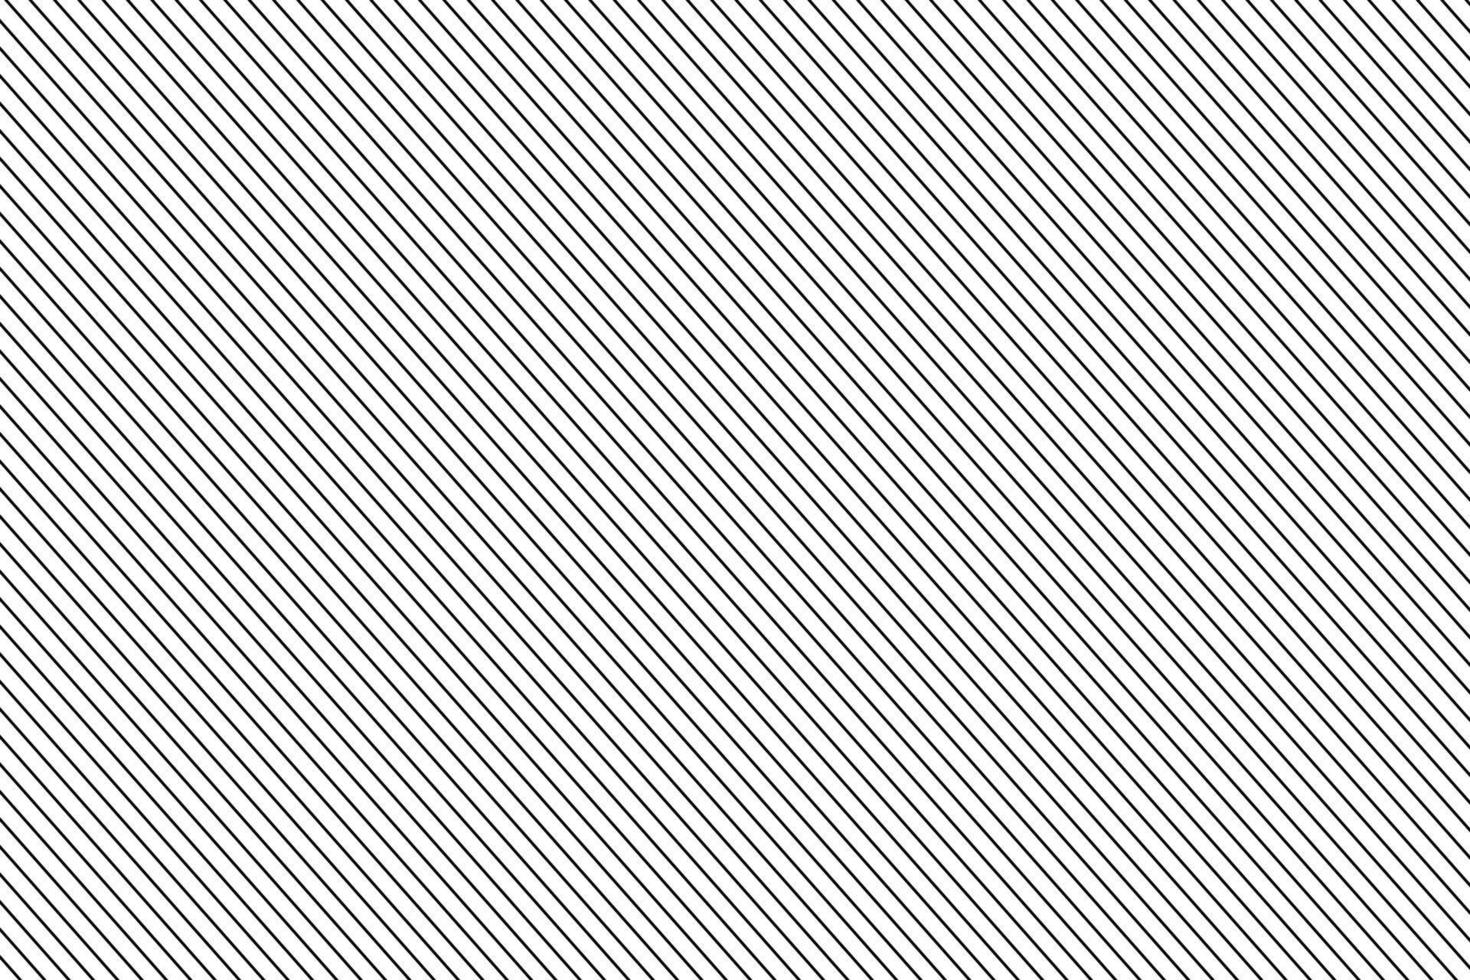 abstract diagonaal streep Rechtdoor lijnen patroon voor banier, poster. vector